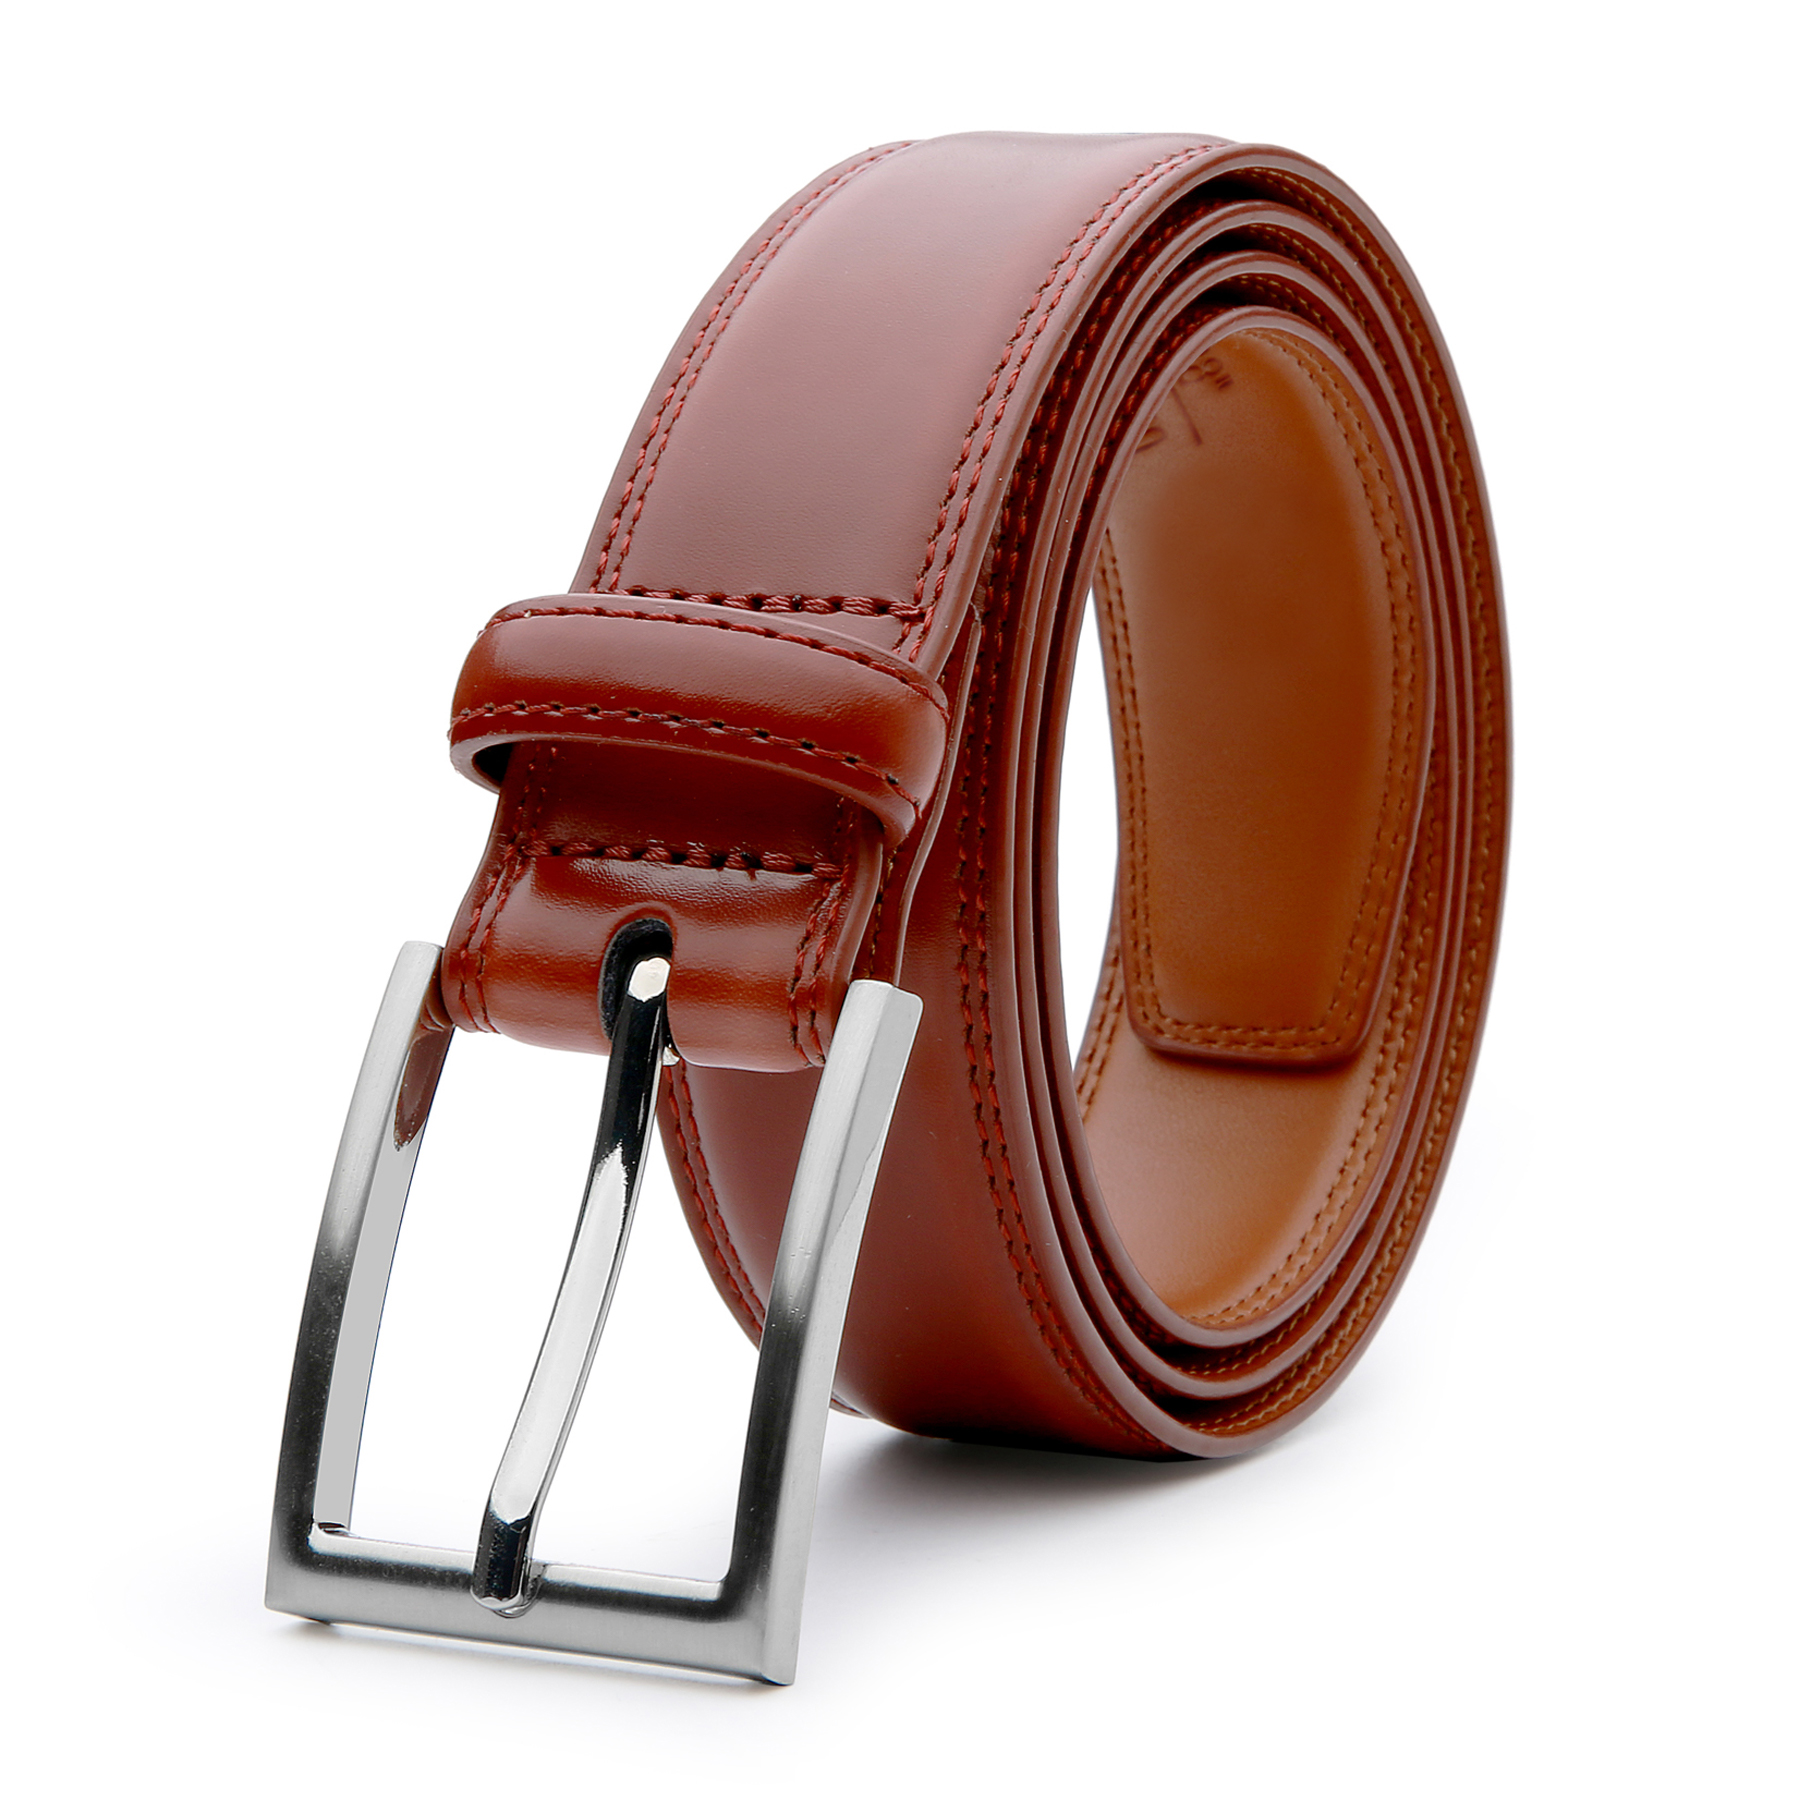 Cinturones para hombre - Visita Kaulike y elige tu favorito